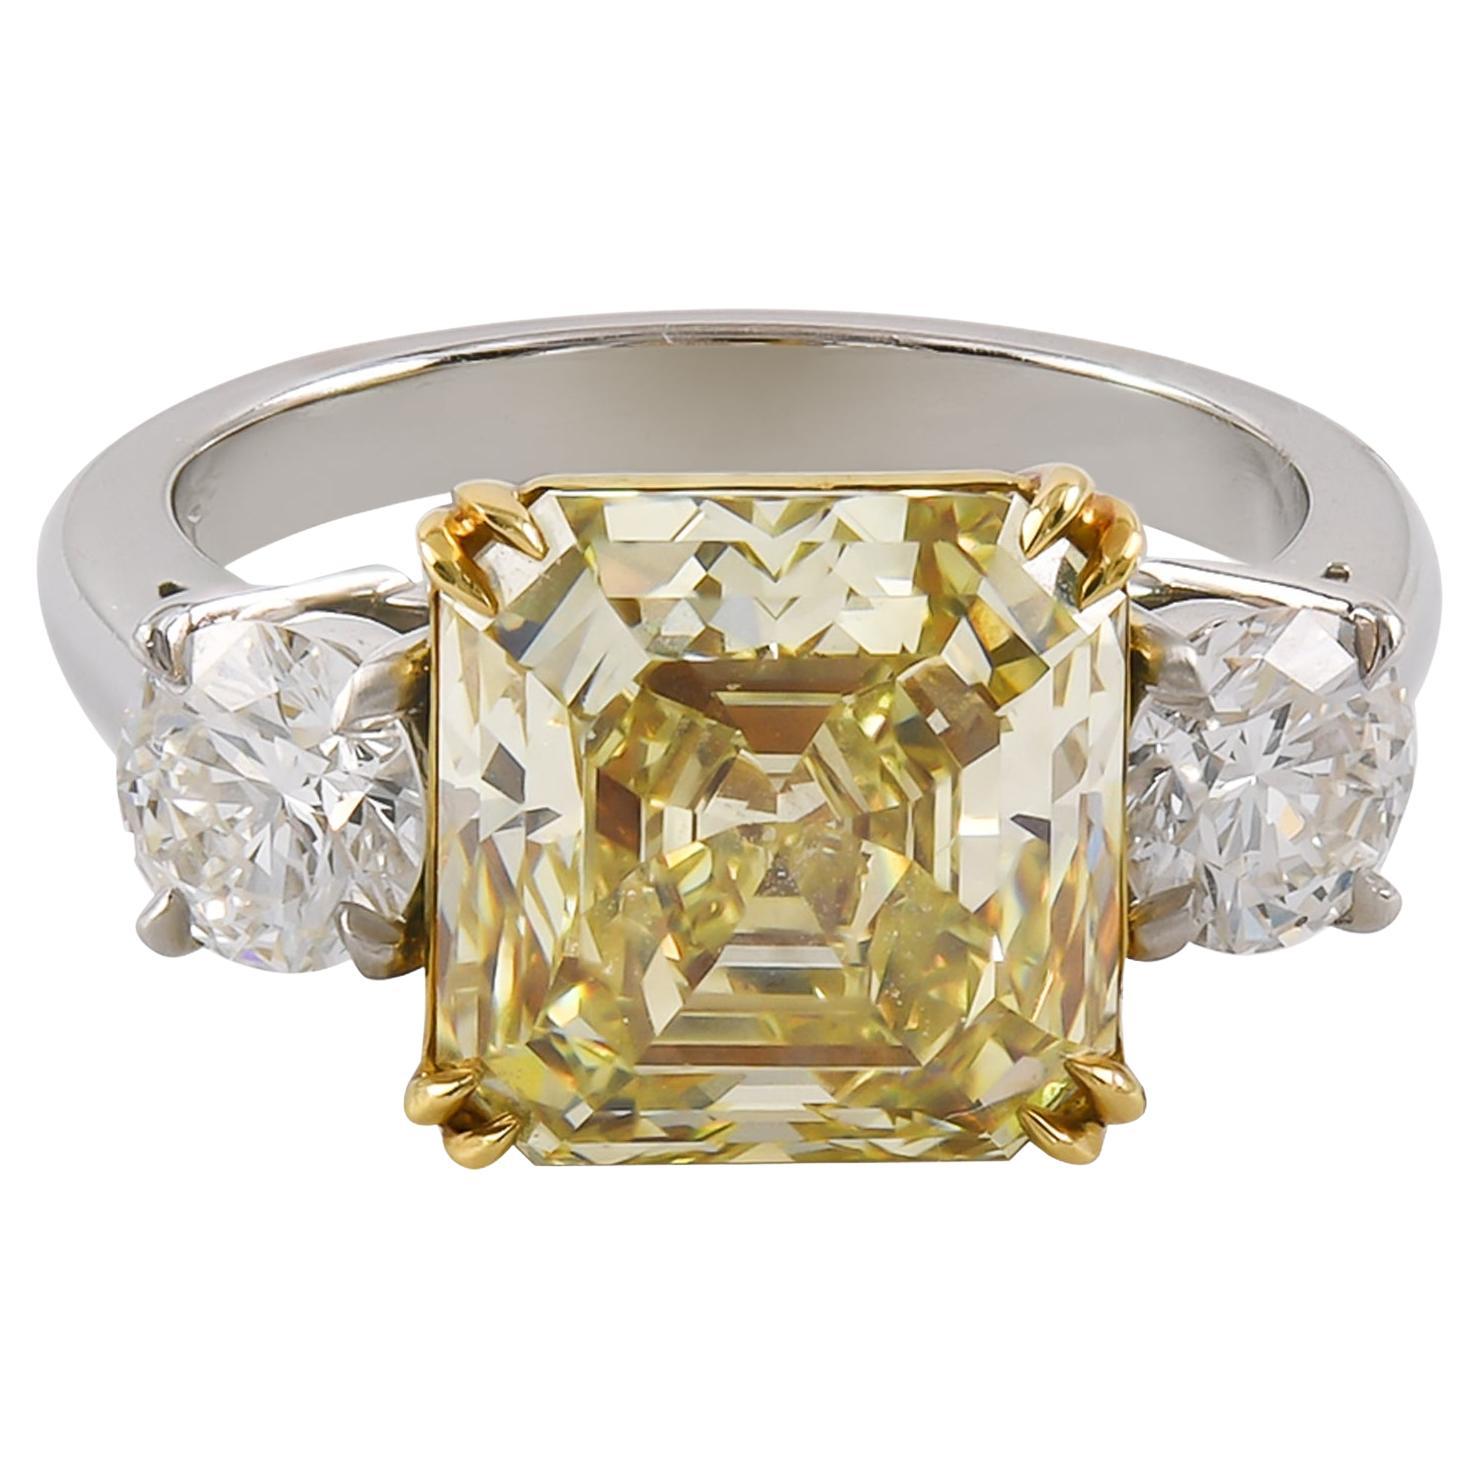 Spectra Fine Jewelry GIA zertifiziert 5,67 Karat Ausgefallener grünlich gelber Diamantring